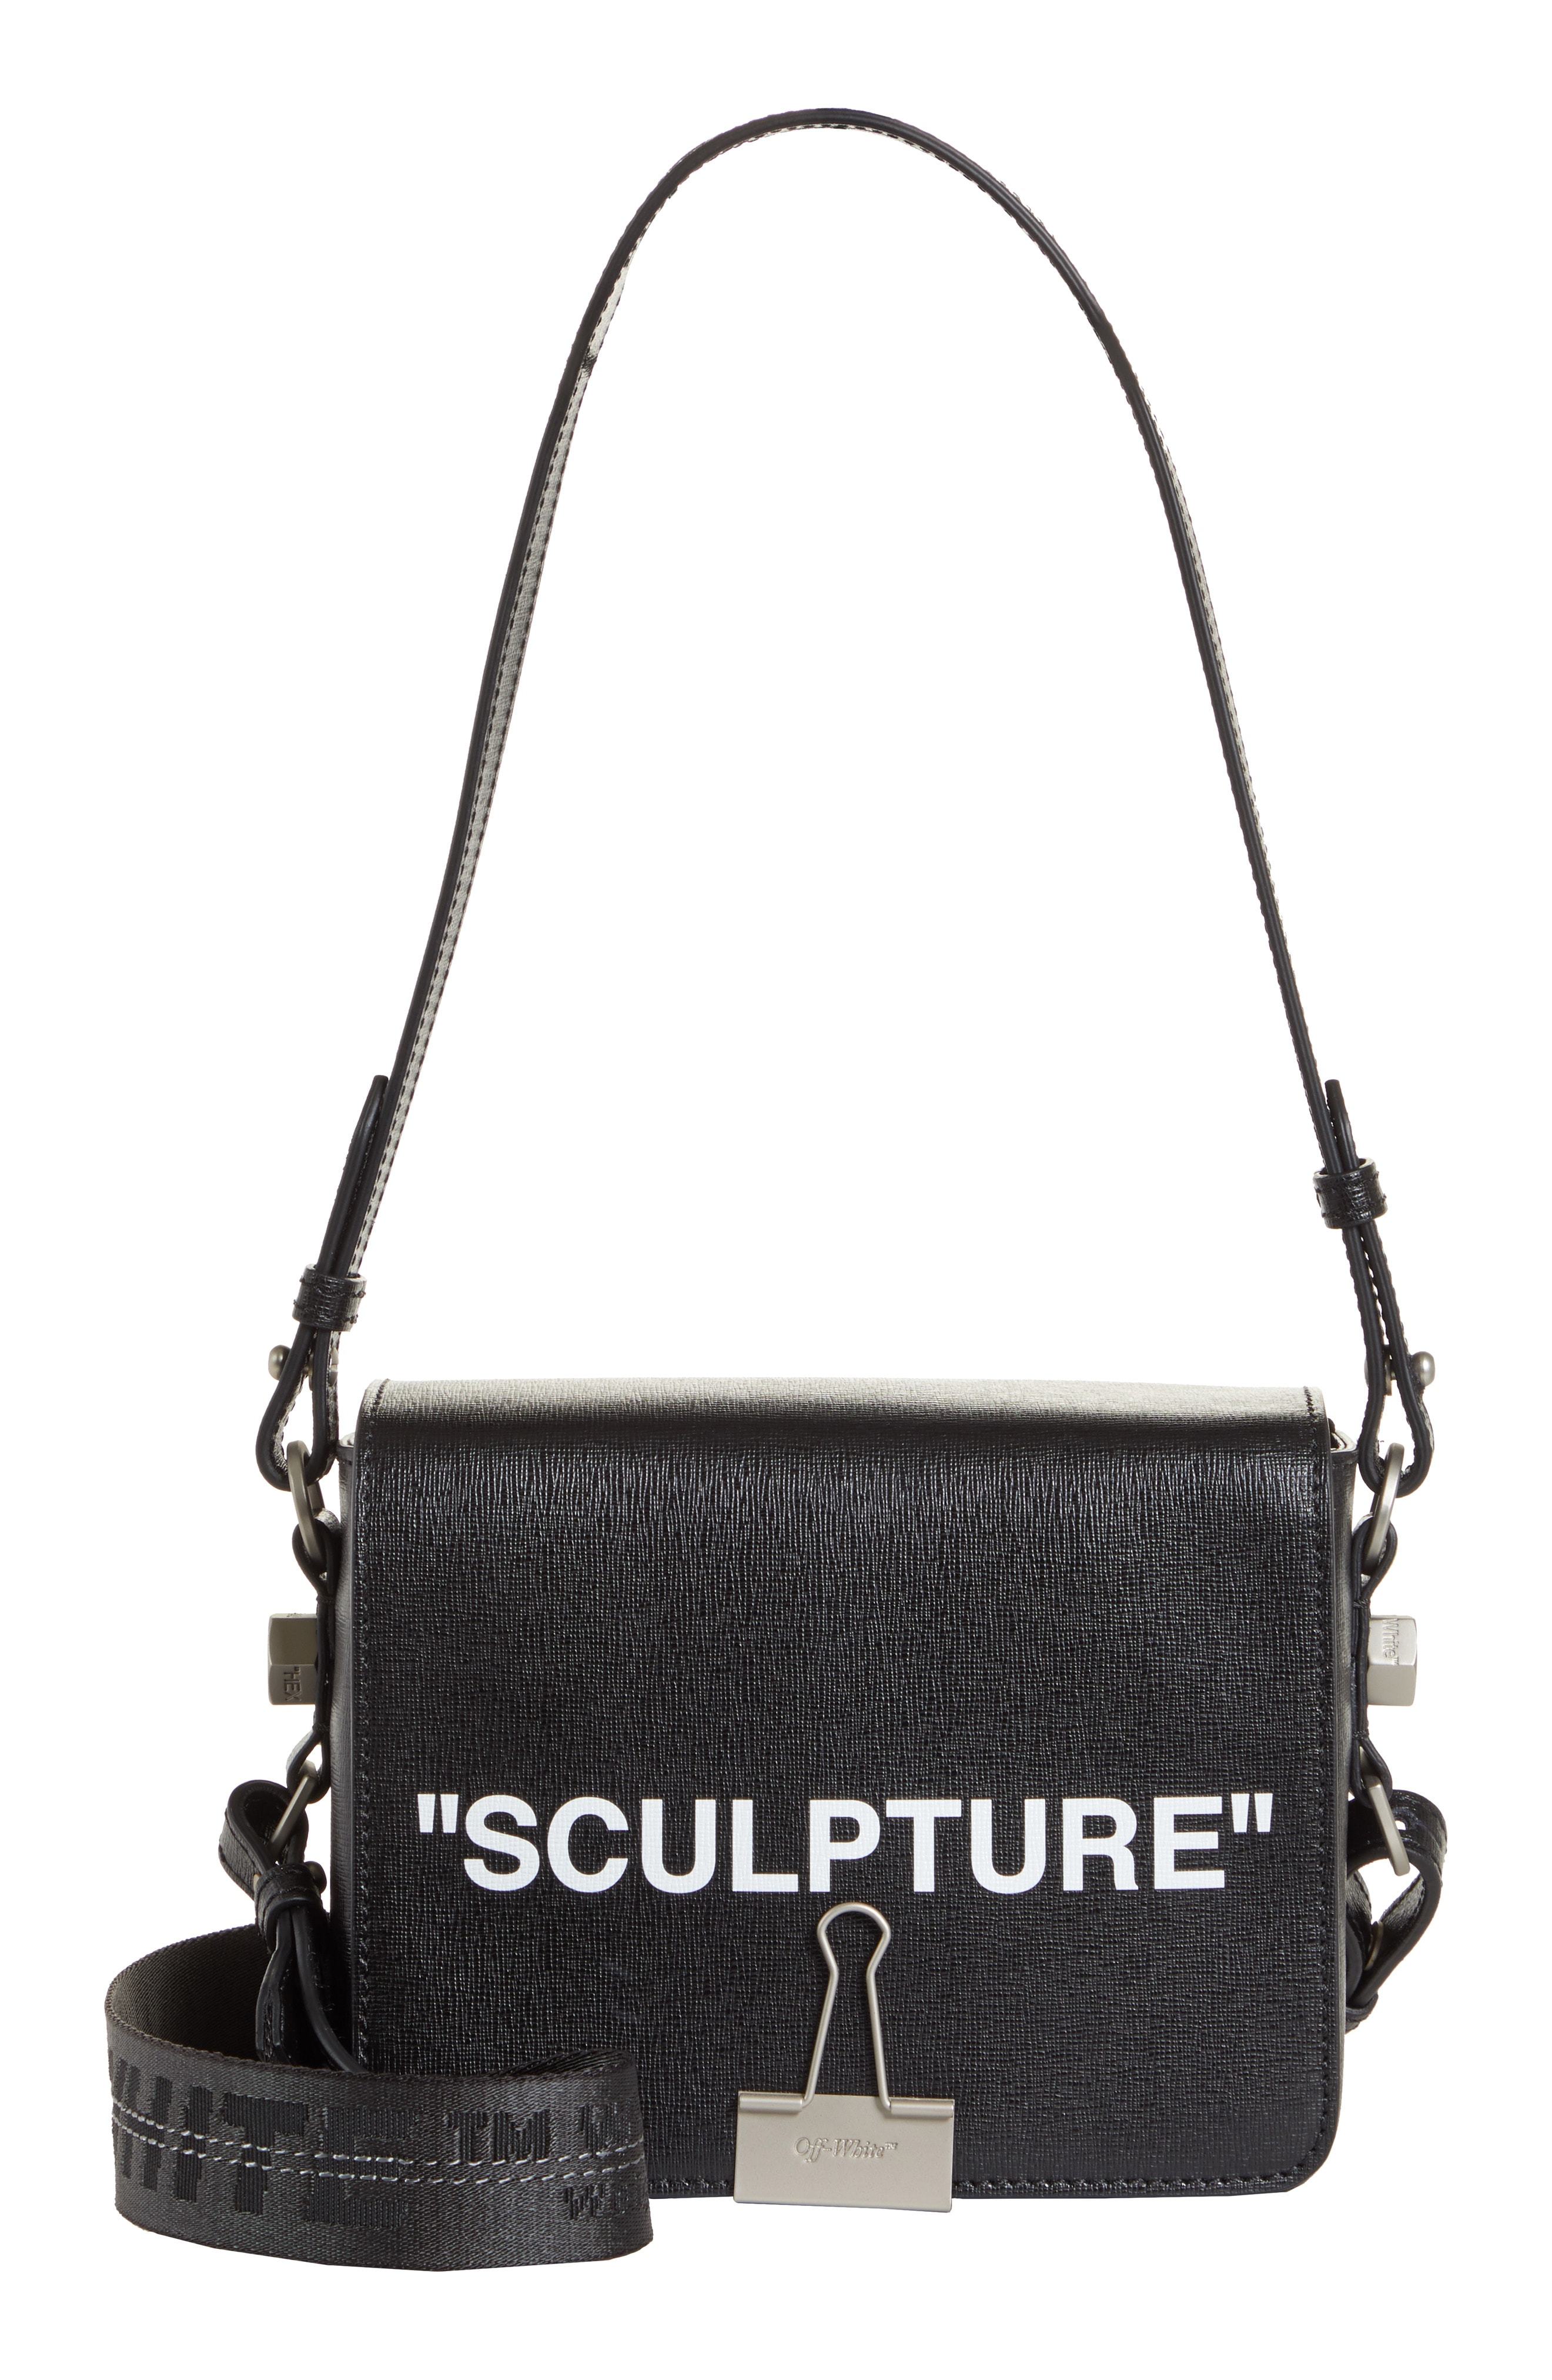 Off-white Sculpture Leather Shoulder Bag In Black